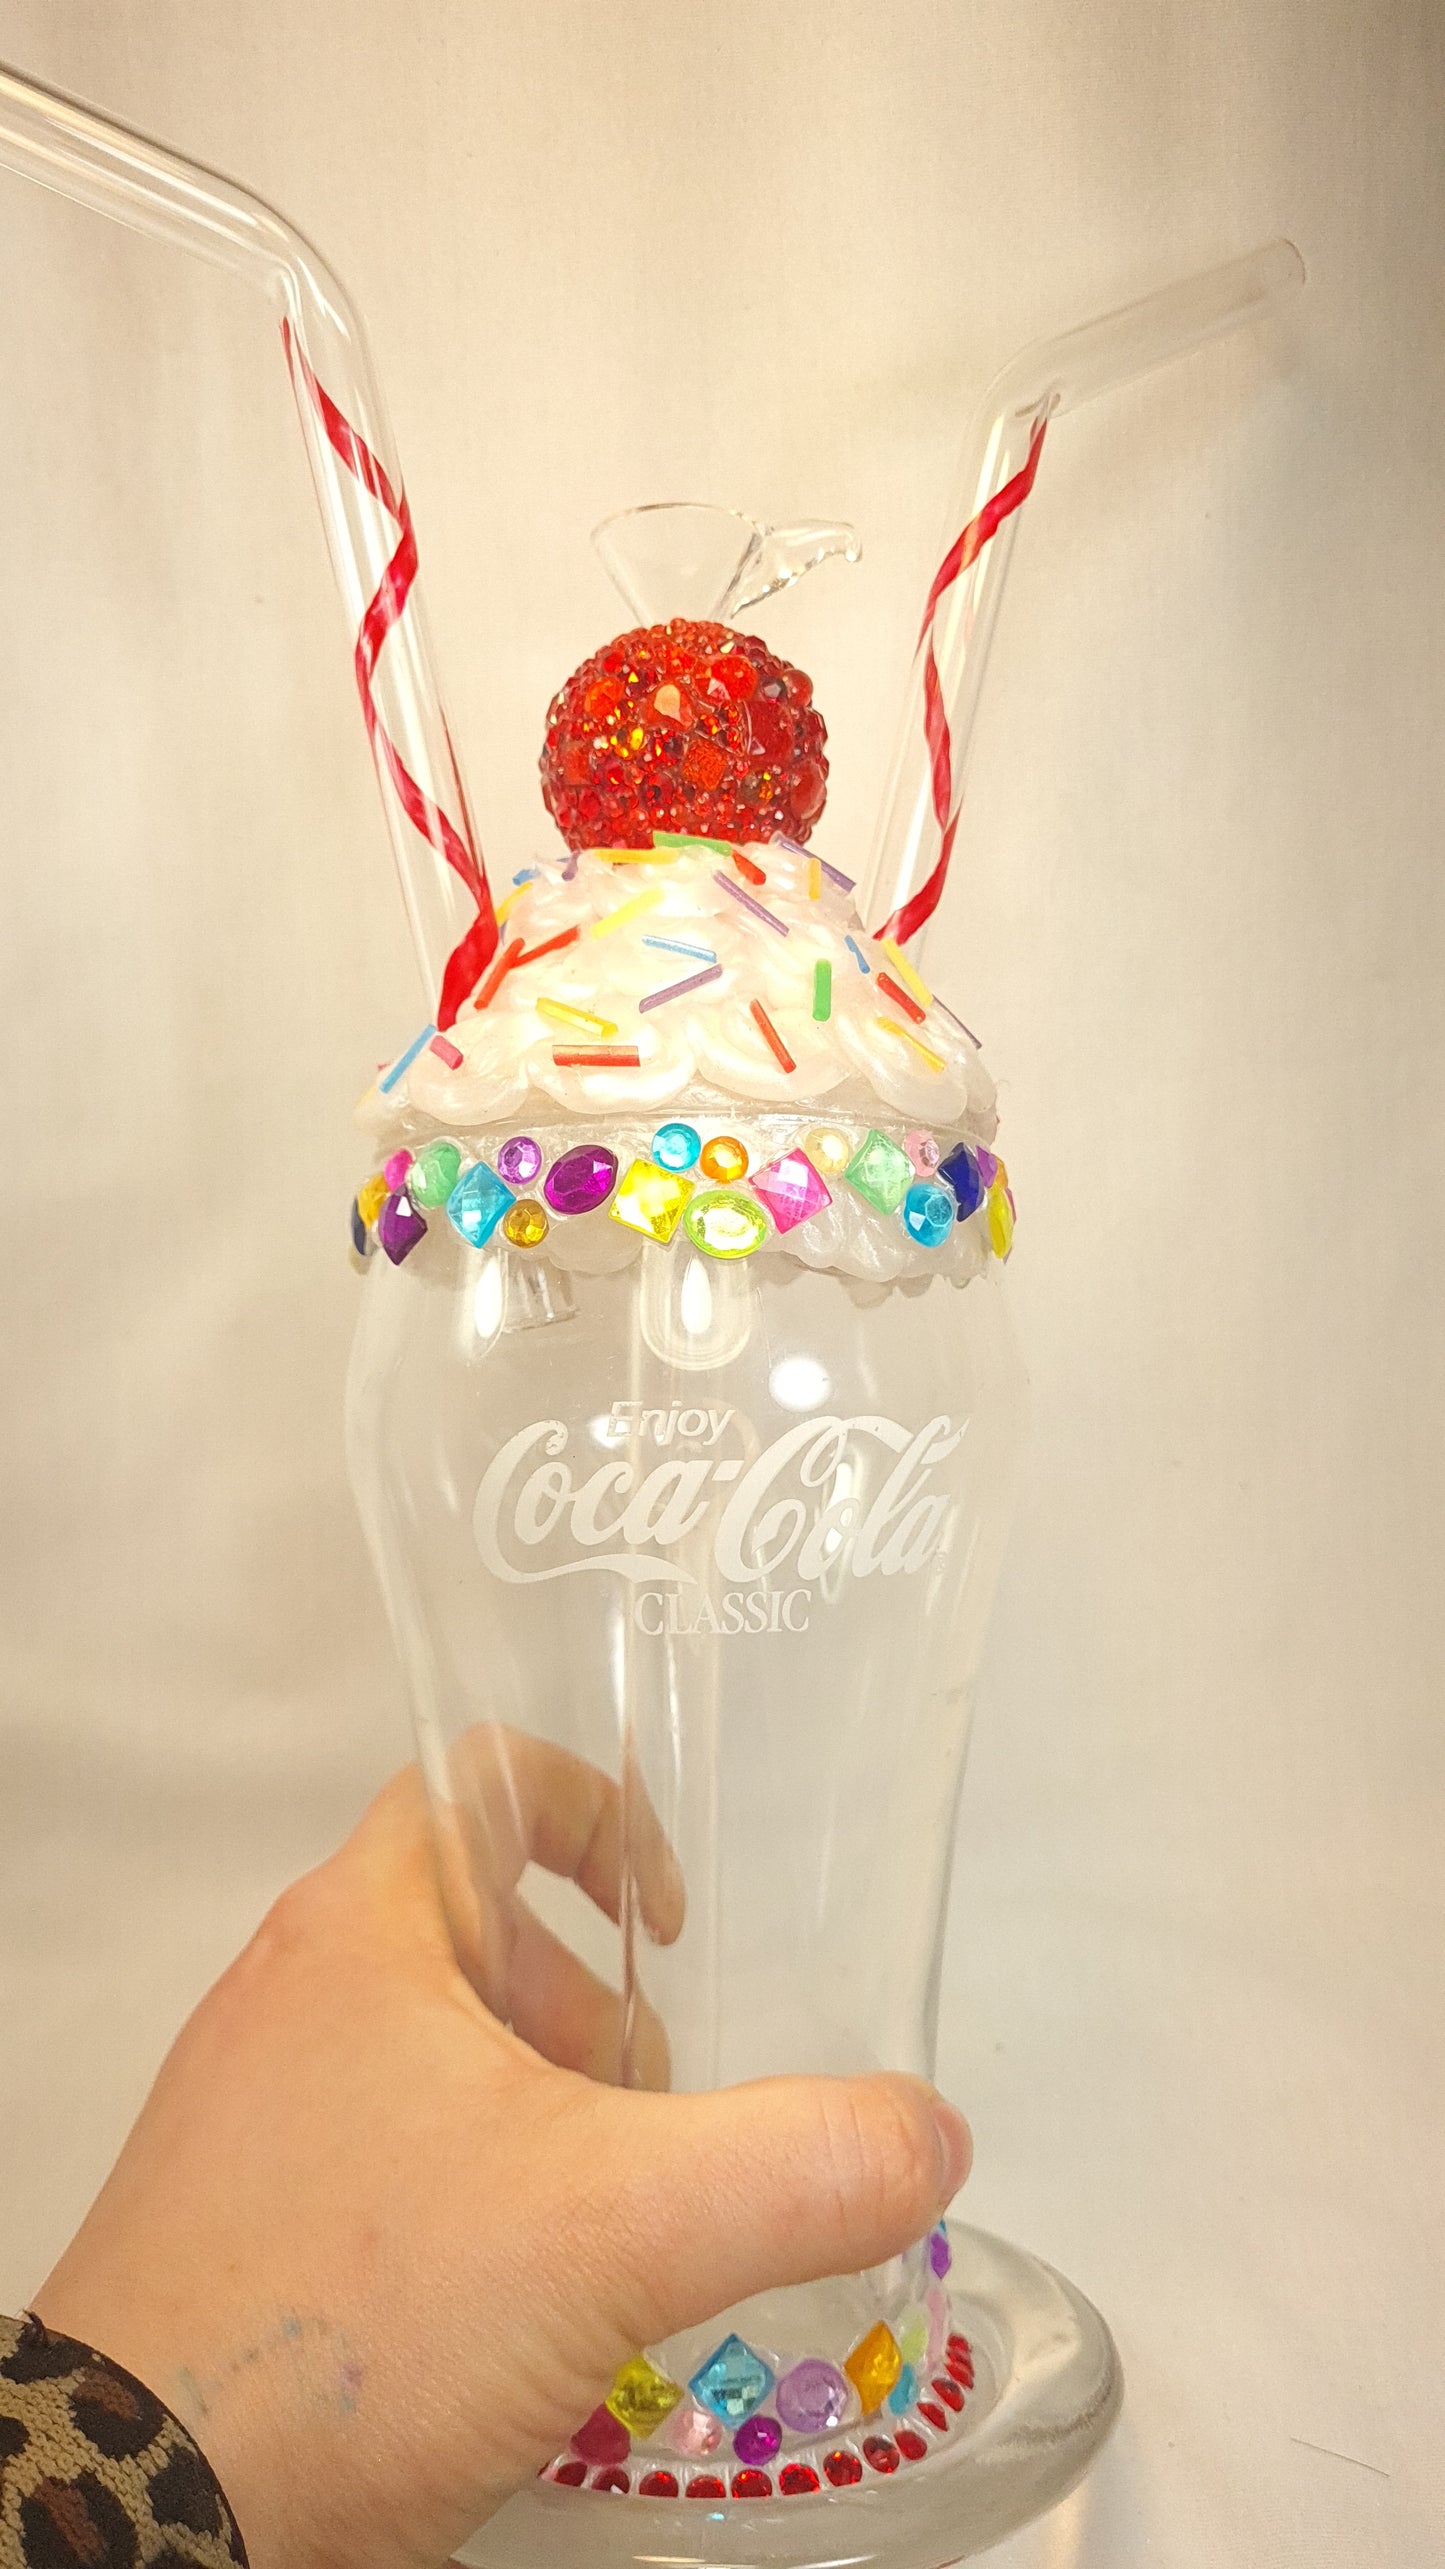 Coca-Cola rainbow milkshake